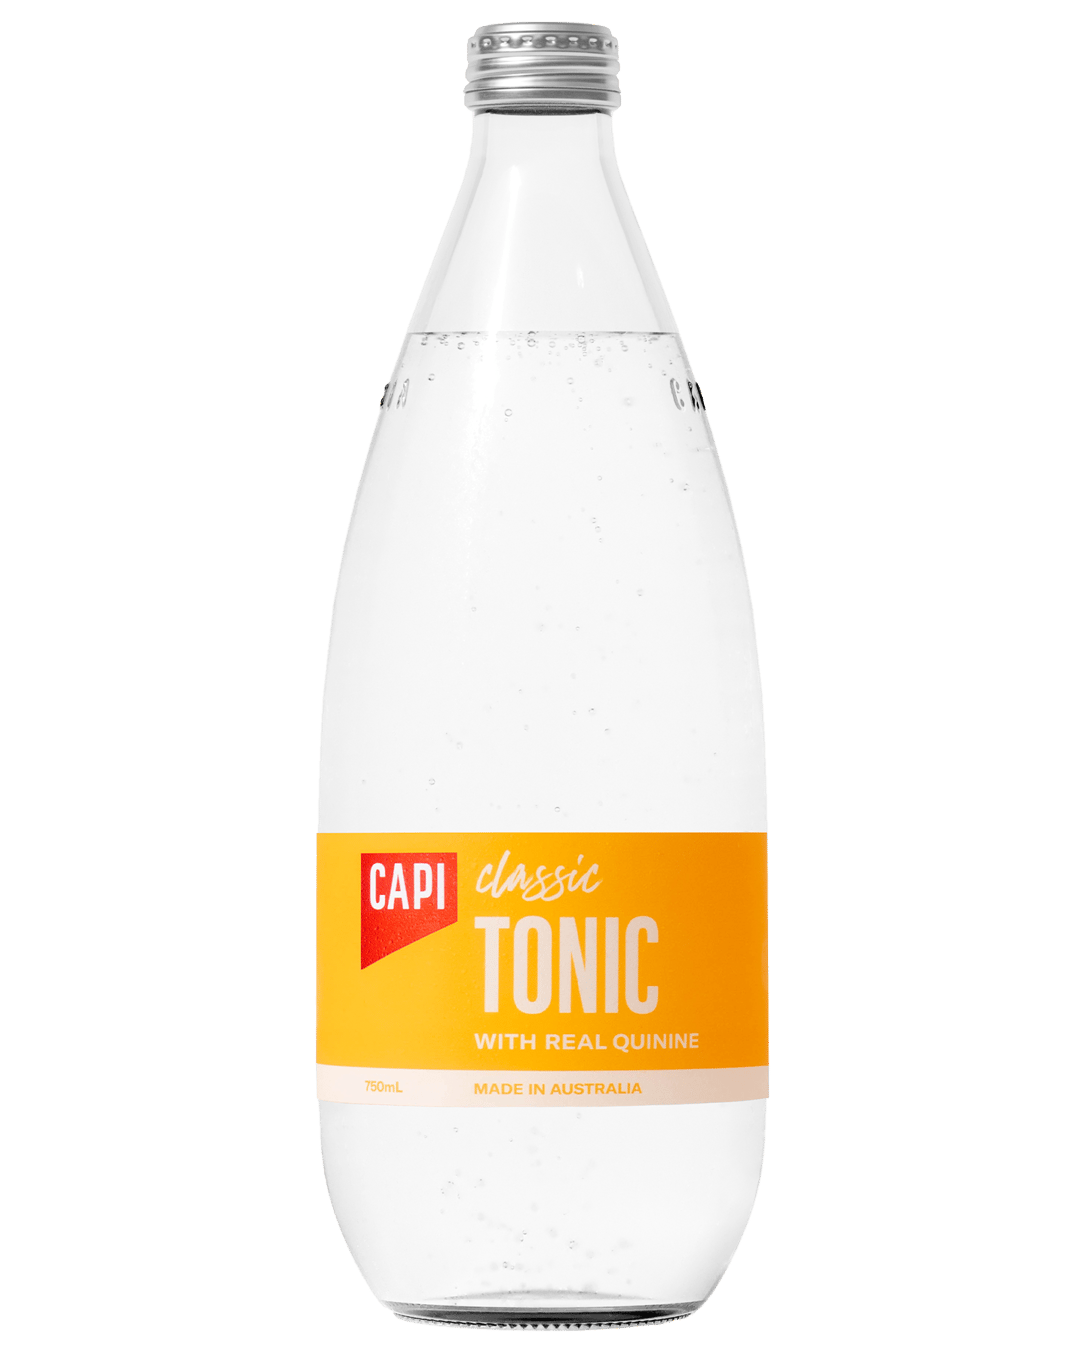 Schweppes Tonic Water, 1,25 litre - Boutique en ligne Piccantino